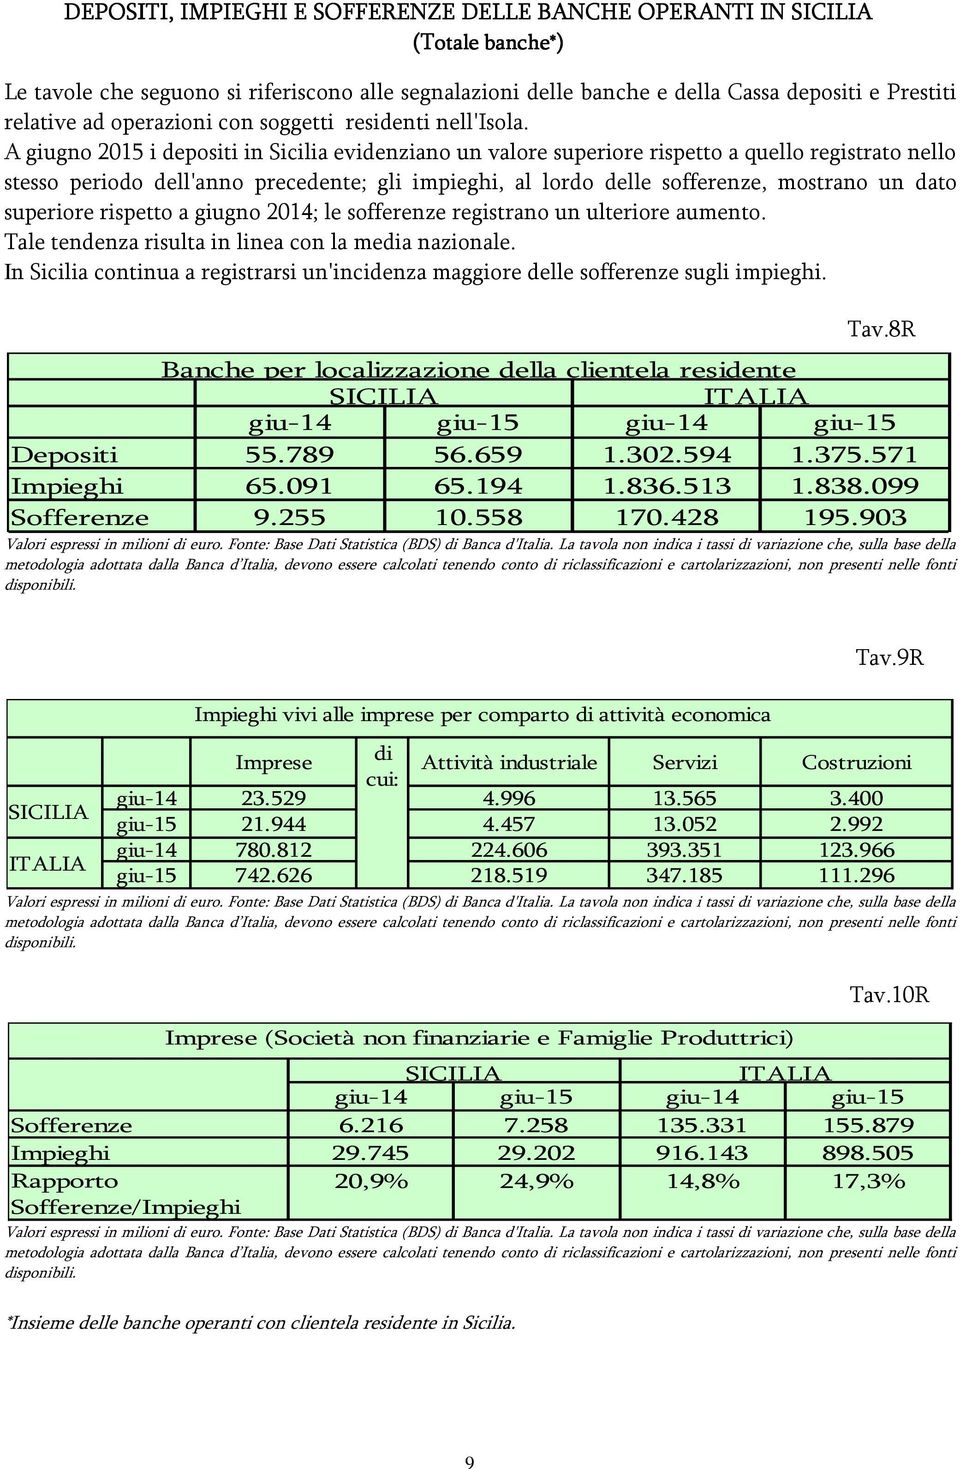 A giugno 2015 i depositi in Sicilia evidenziano un valore superiore rispetto a quello registrato nello stesso periodo dell'anno precedente; gli impieghi, al lordo delle sofferenze, mostrano un dato